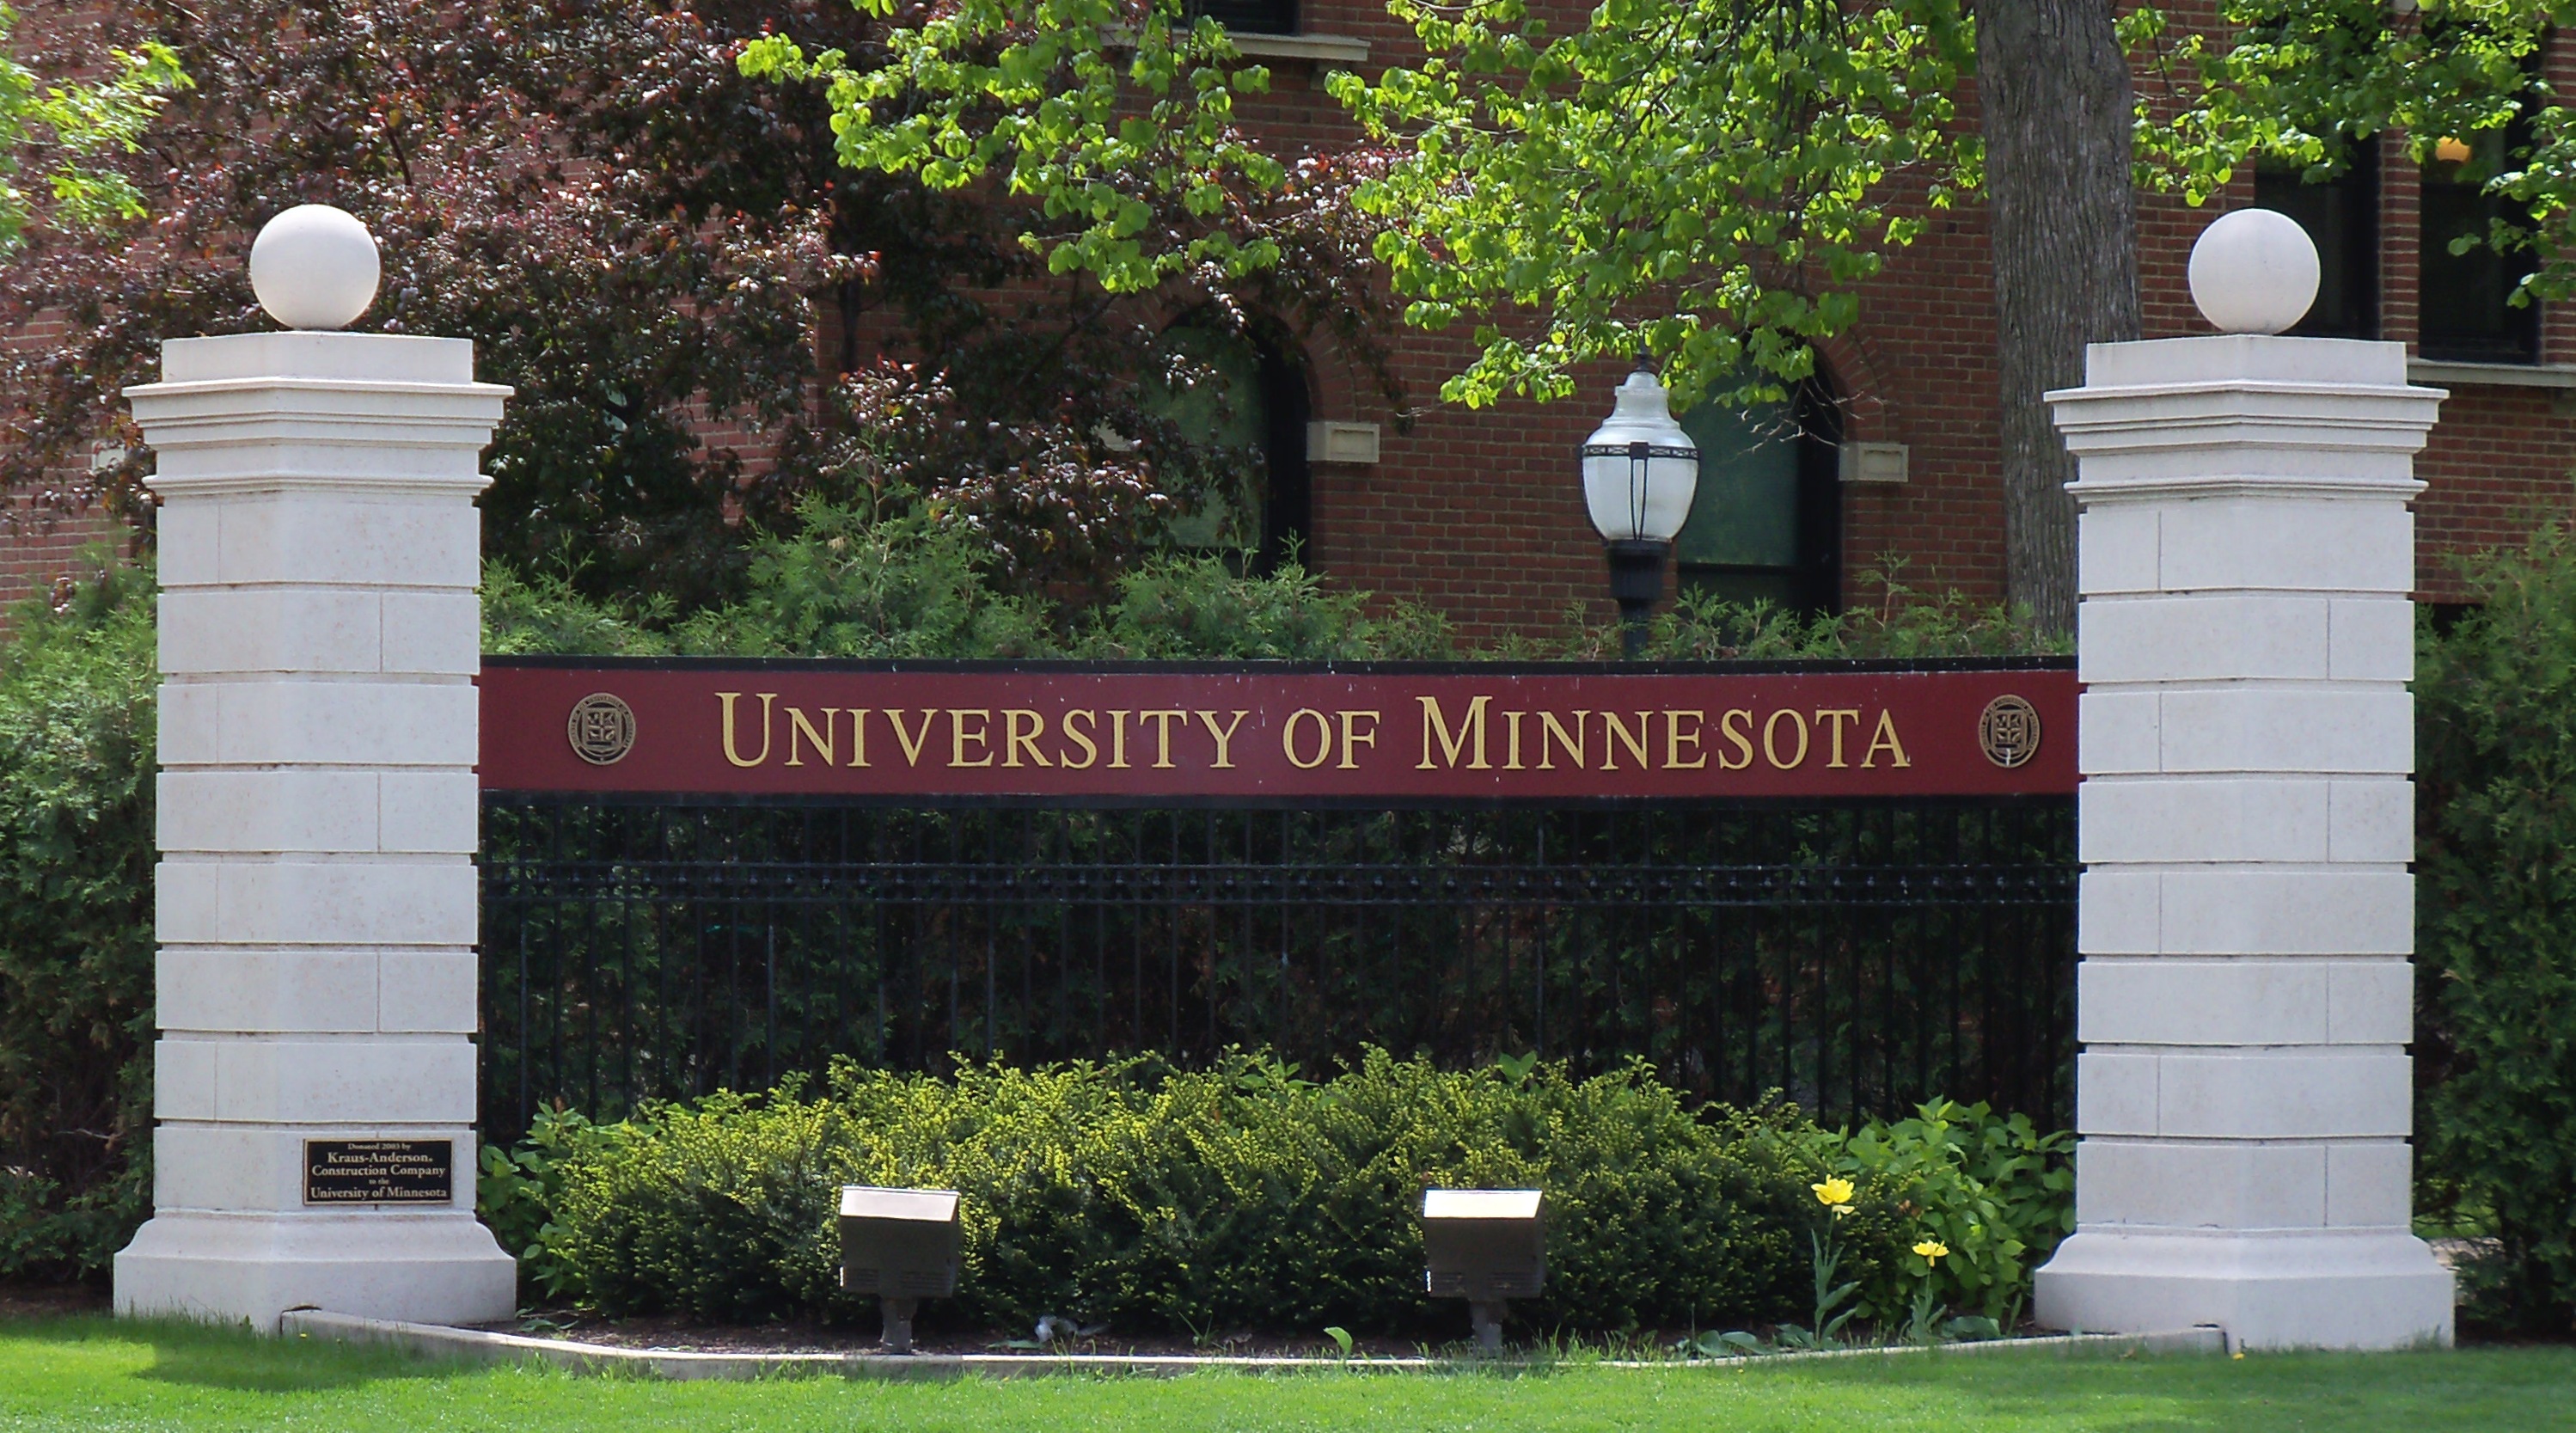 University_of_Minnesota_entrance_sign_1